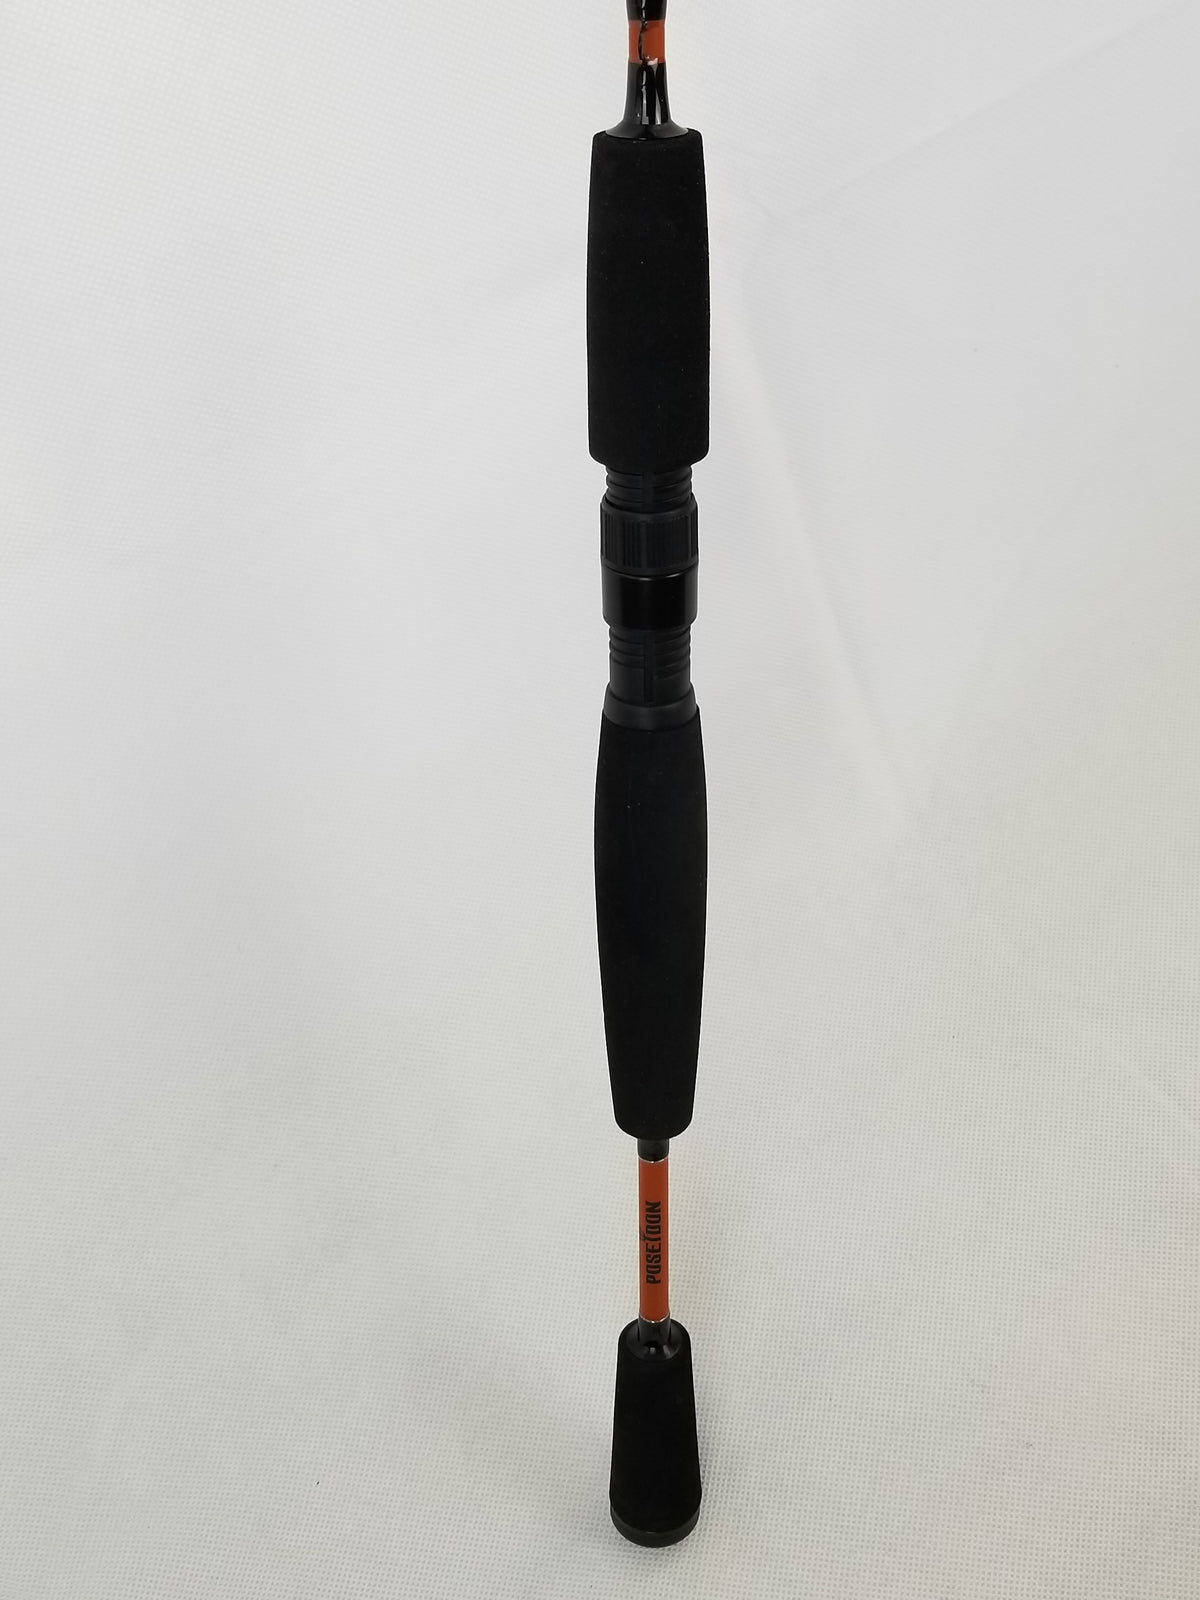 New Cam's "Orange Poseidon" Titanium Signature Series 6'6" Combo